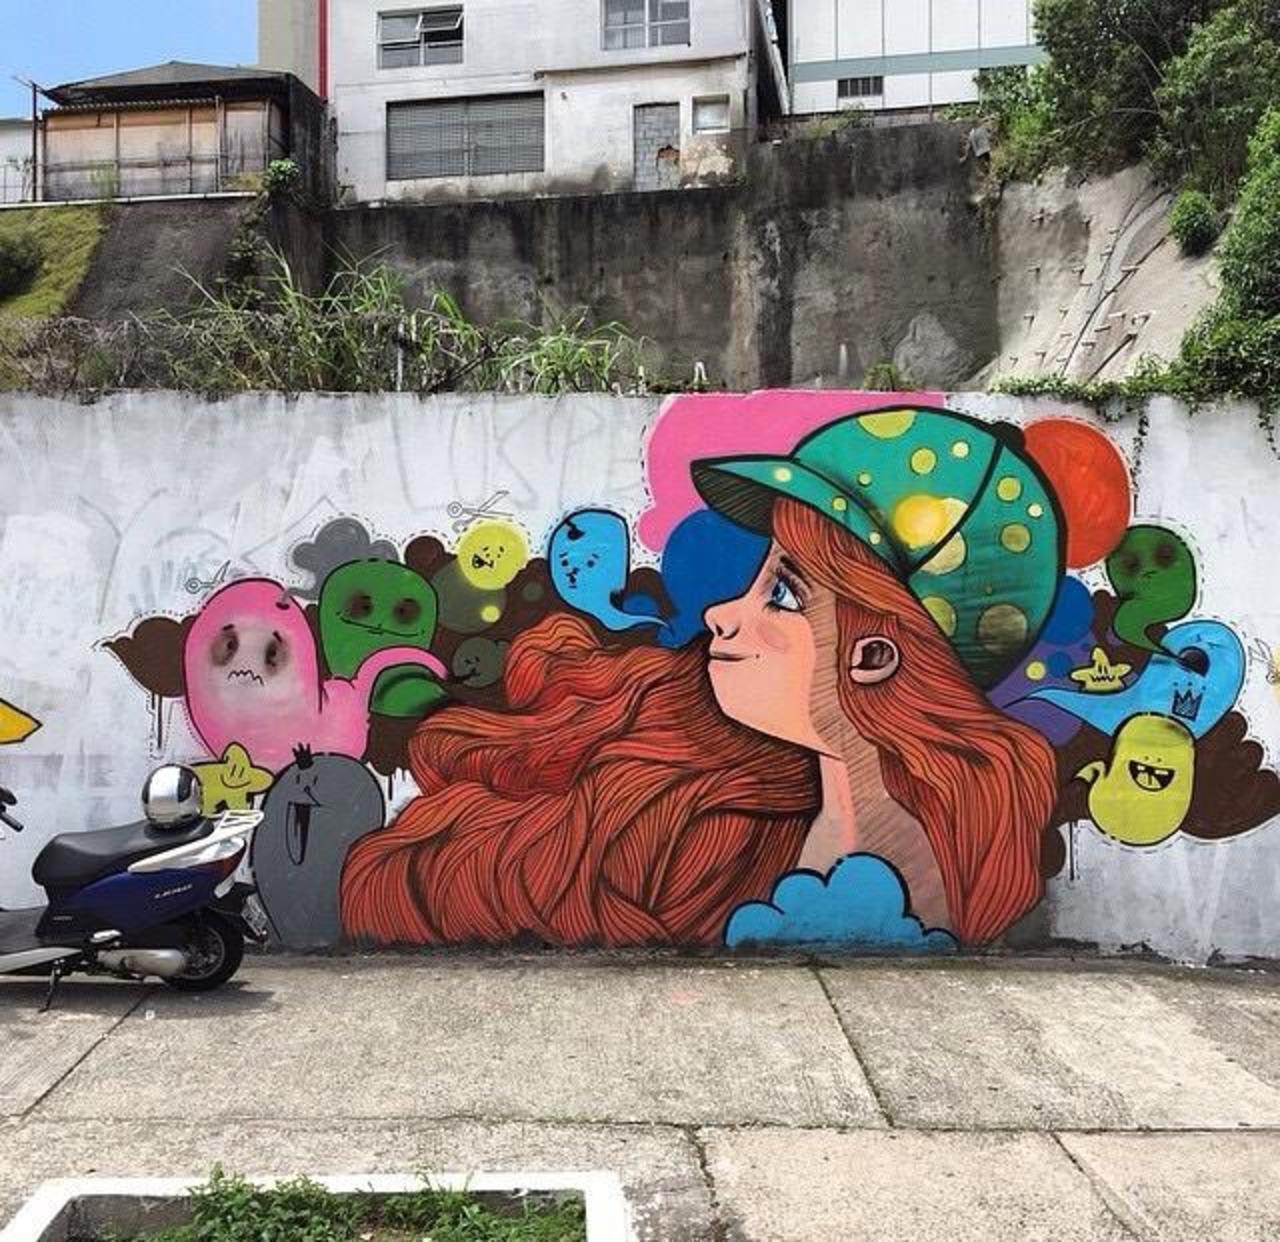 Endearing Street Art by Vupulos in São Paulo, Brazil 

#art #mural #graffiti #streetart http://t.co/i6A8OapawZ